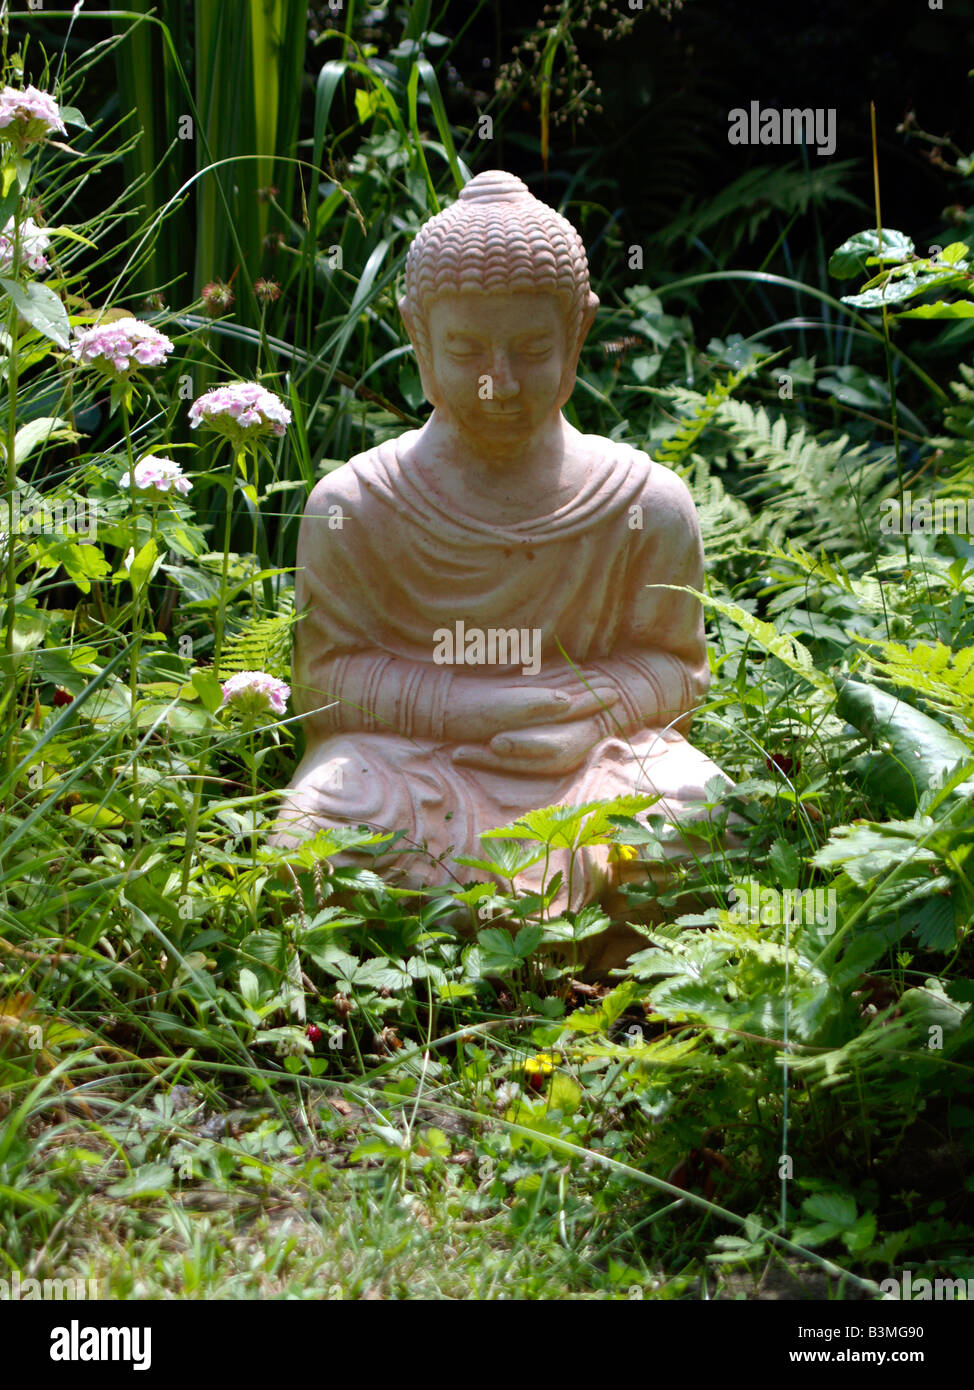 Buddhastatue im Garten, statua di Buddha in giardino Foto Stock